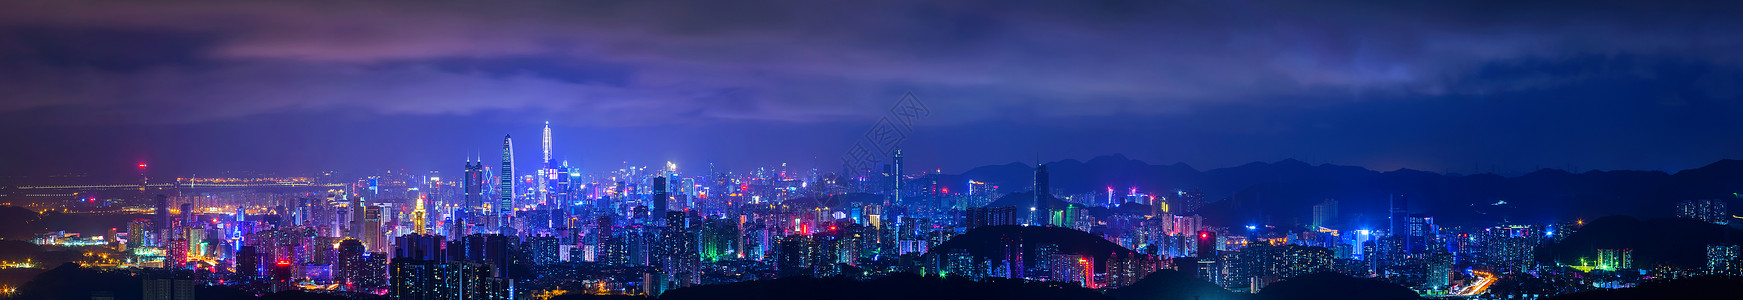 改革开放70深圳城市夜景背景